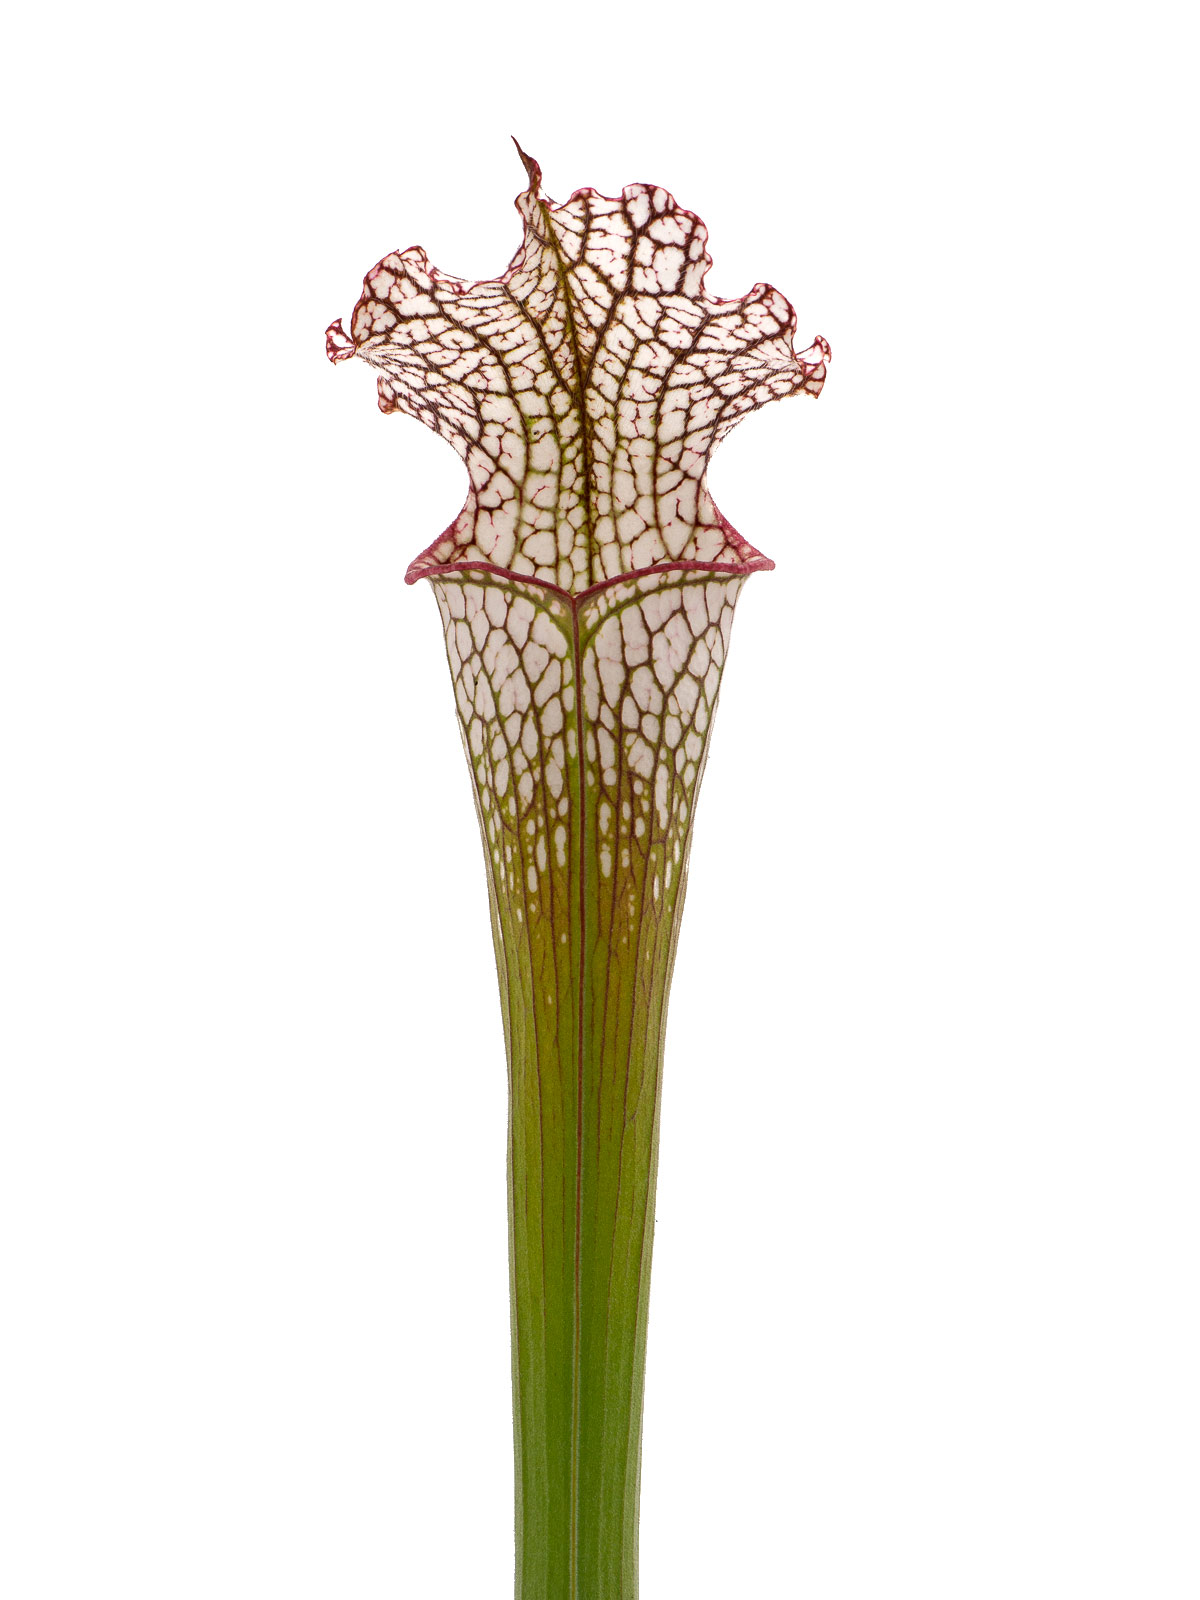 Sarracenia leucophylla - pubescent form, Joachim Jung